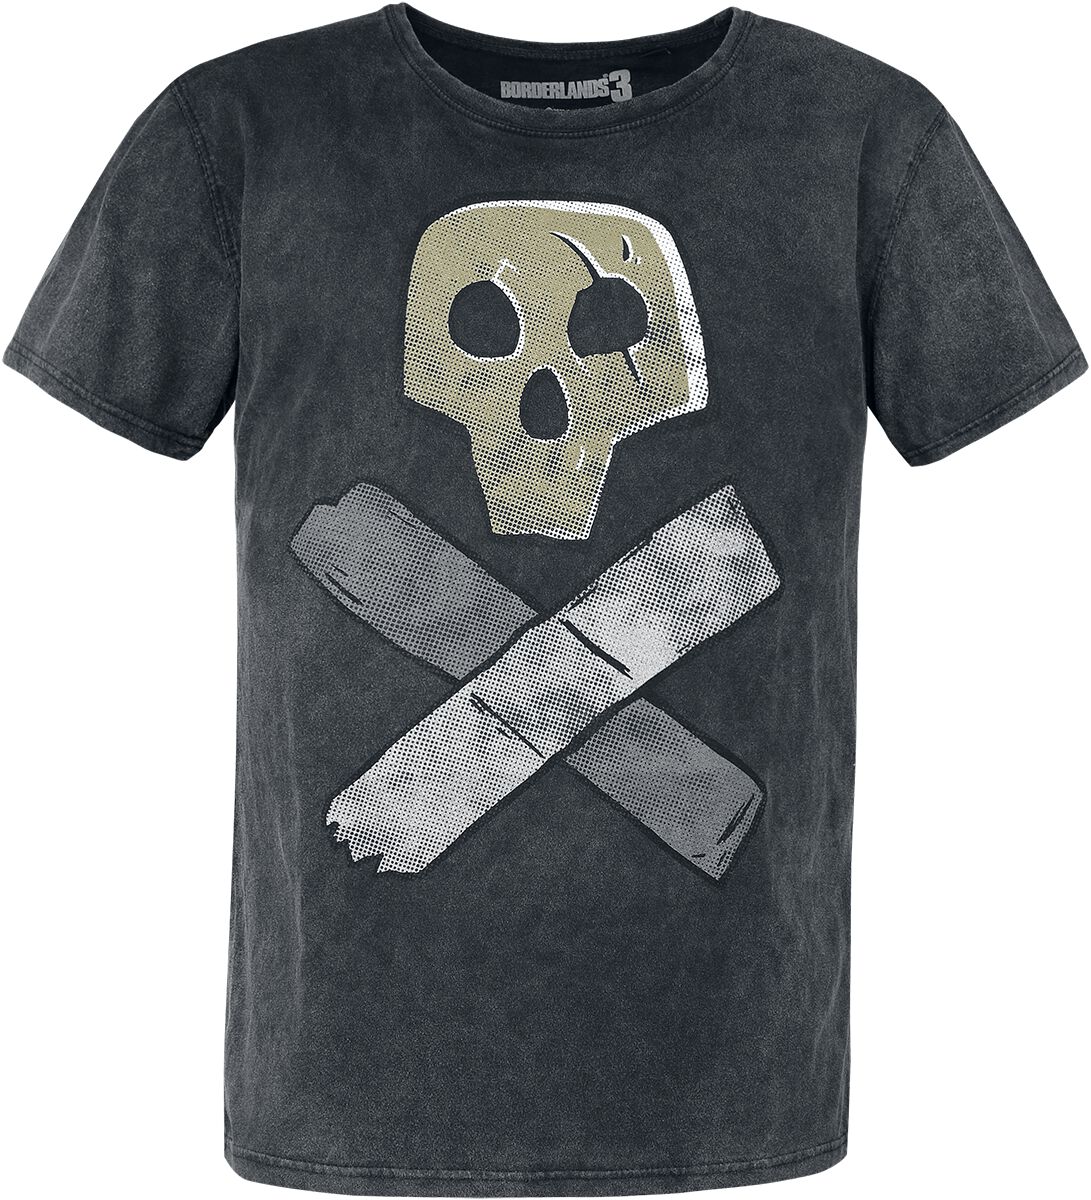 Borderlands 3 - Skull T-Shirt grau in L